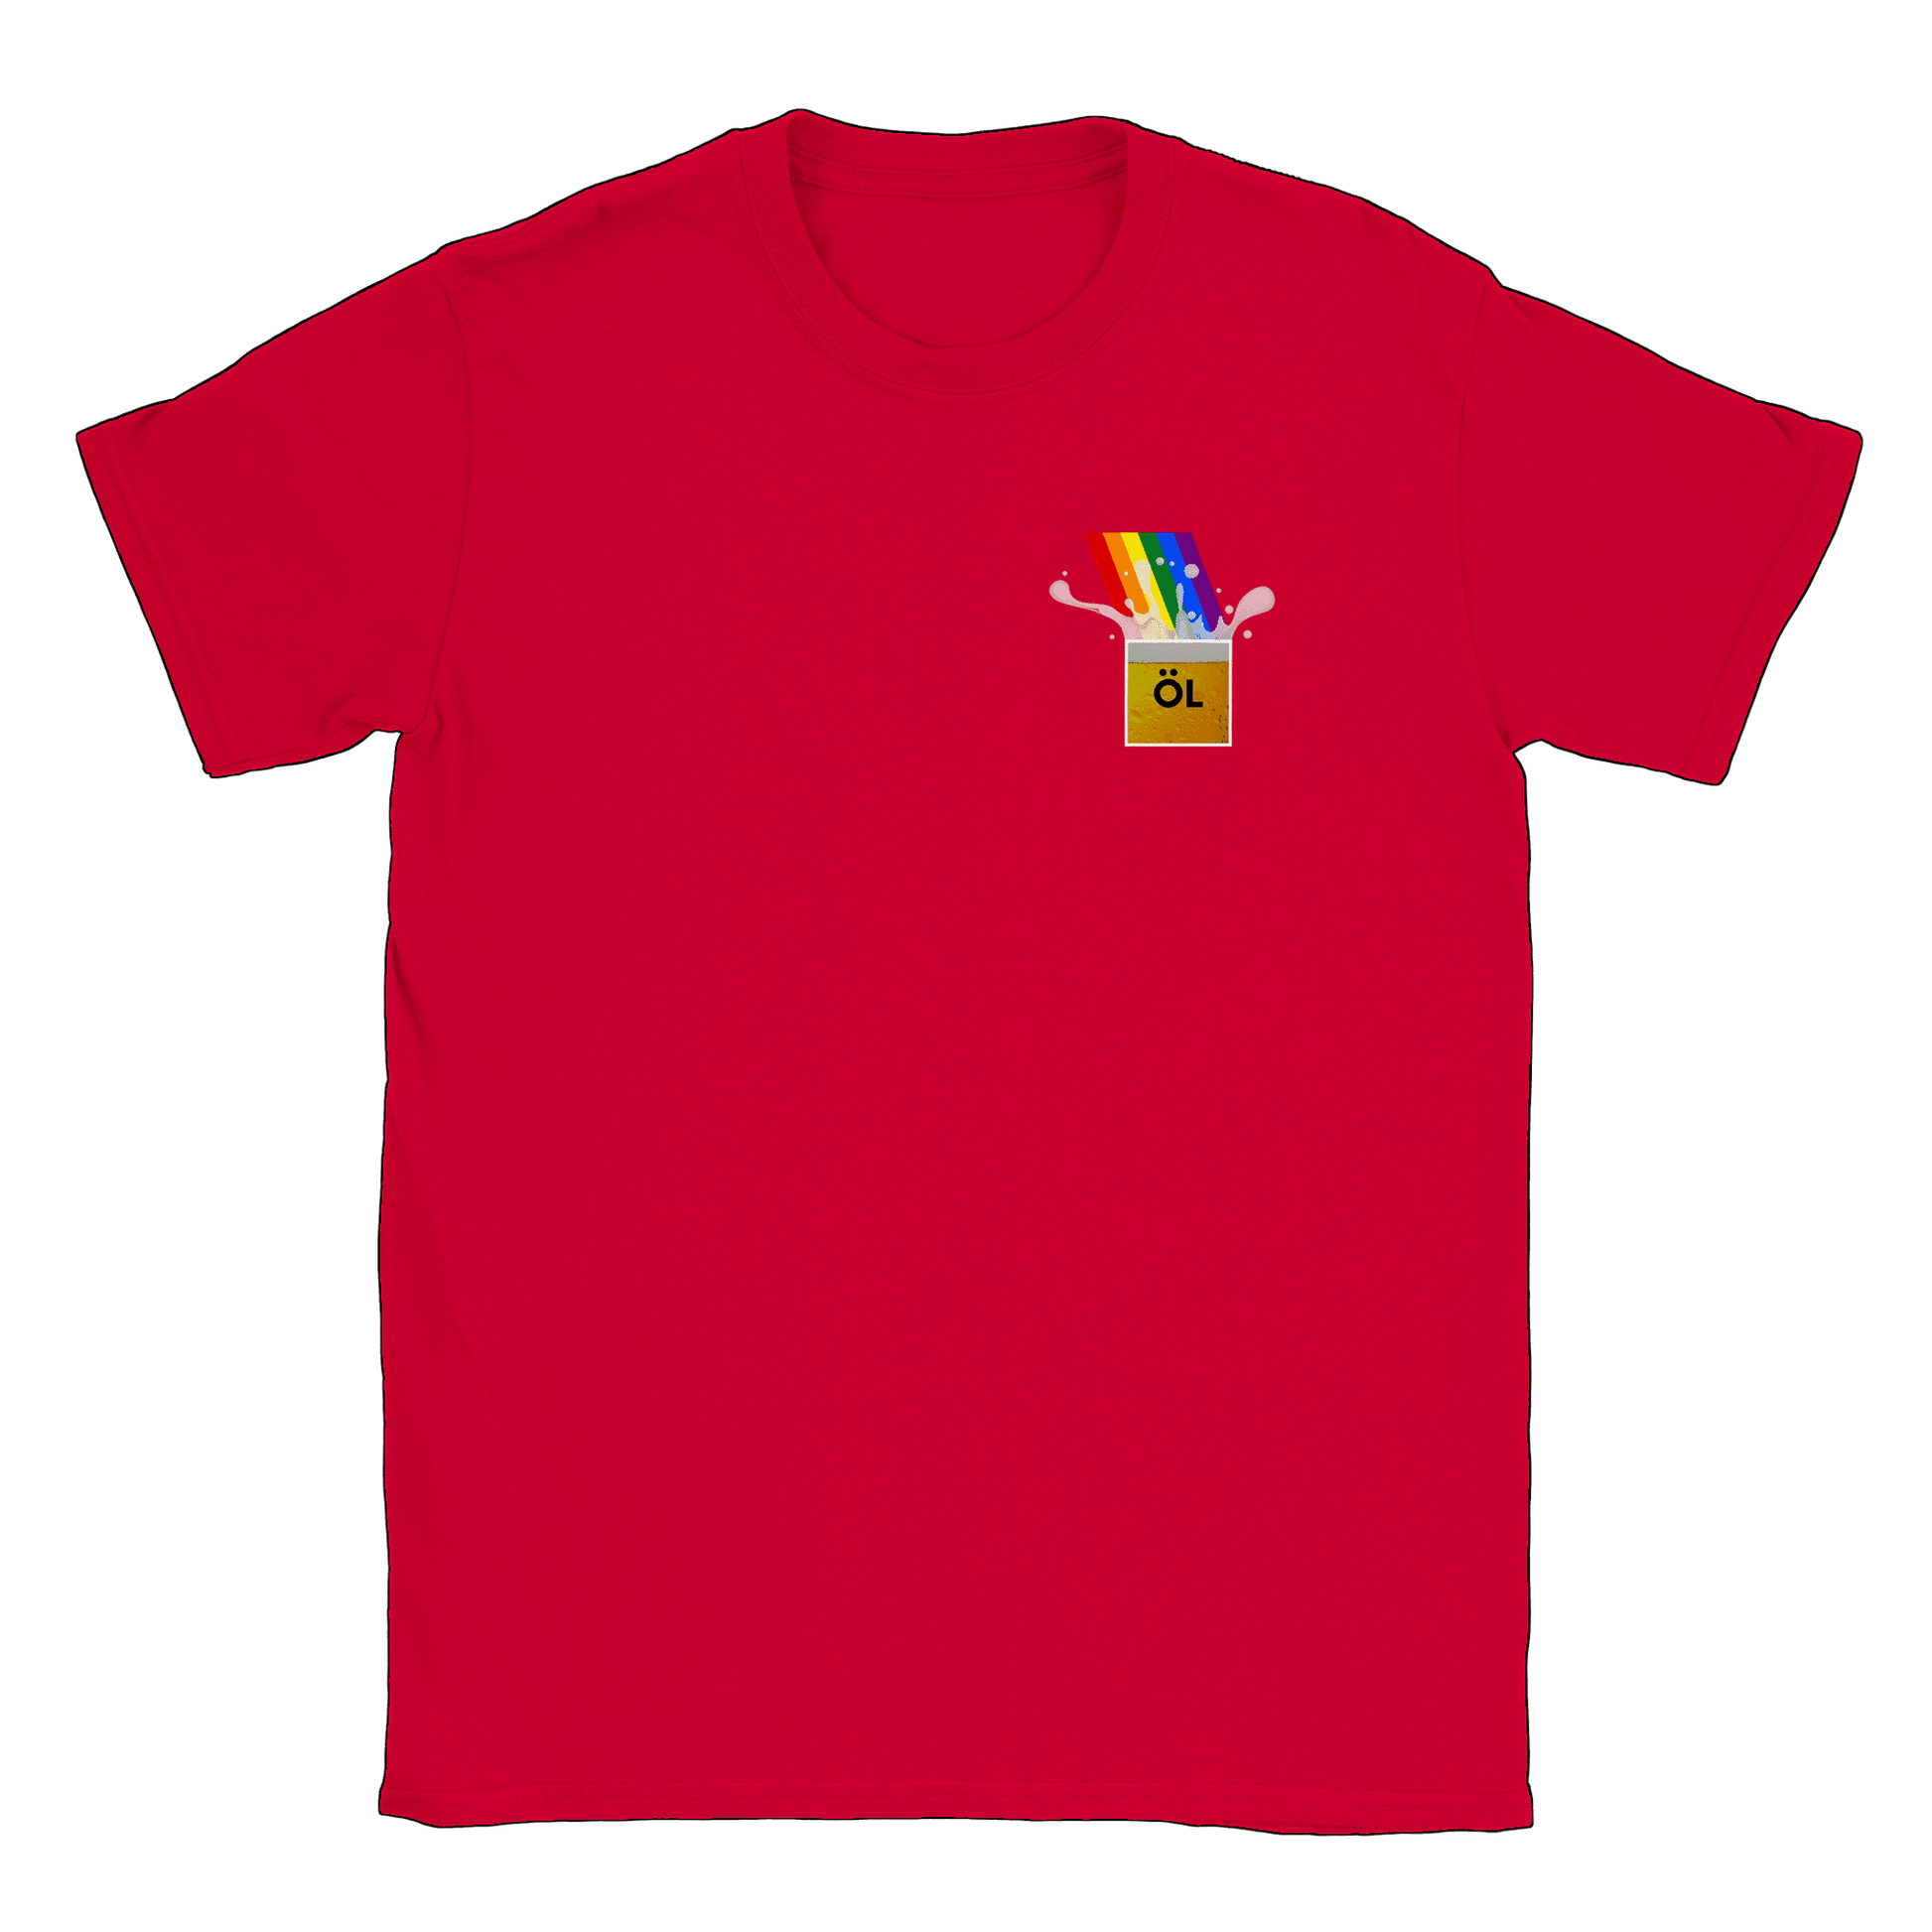 Öl vid regnbågens slut - T-shirt Röd